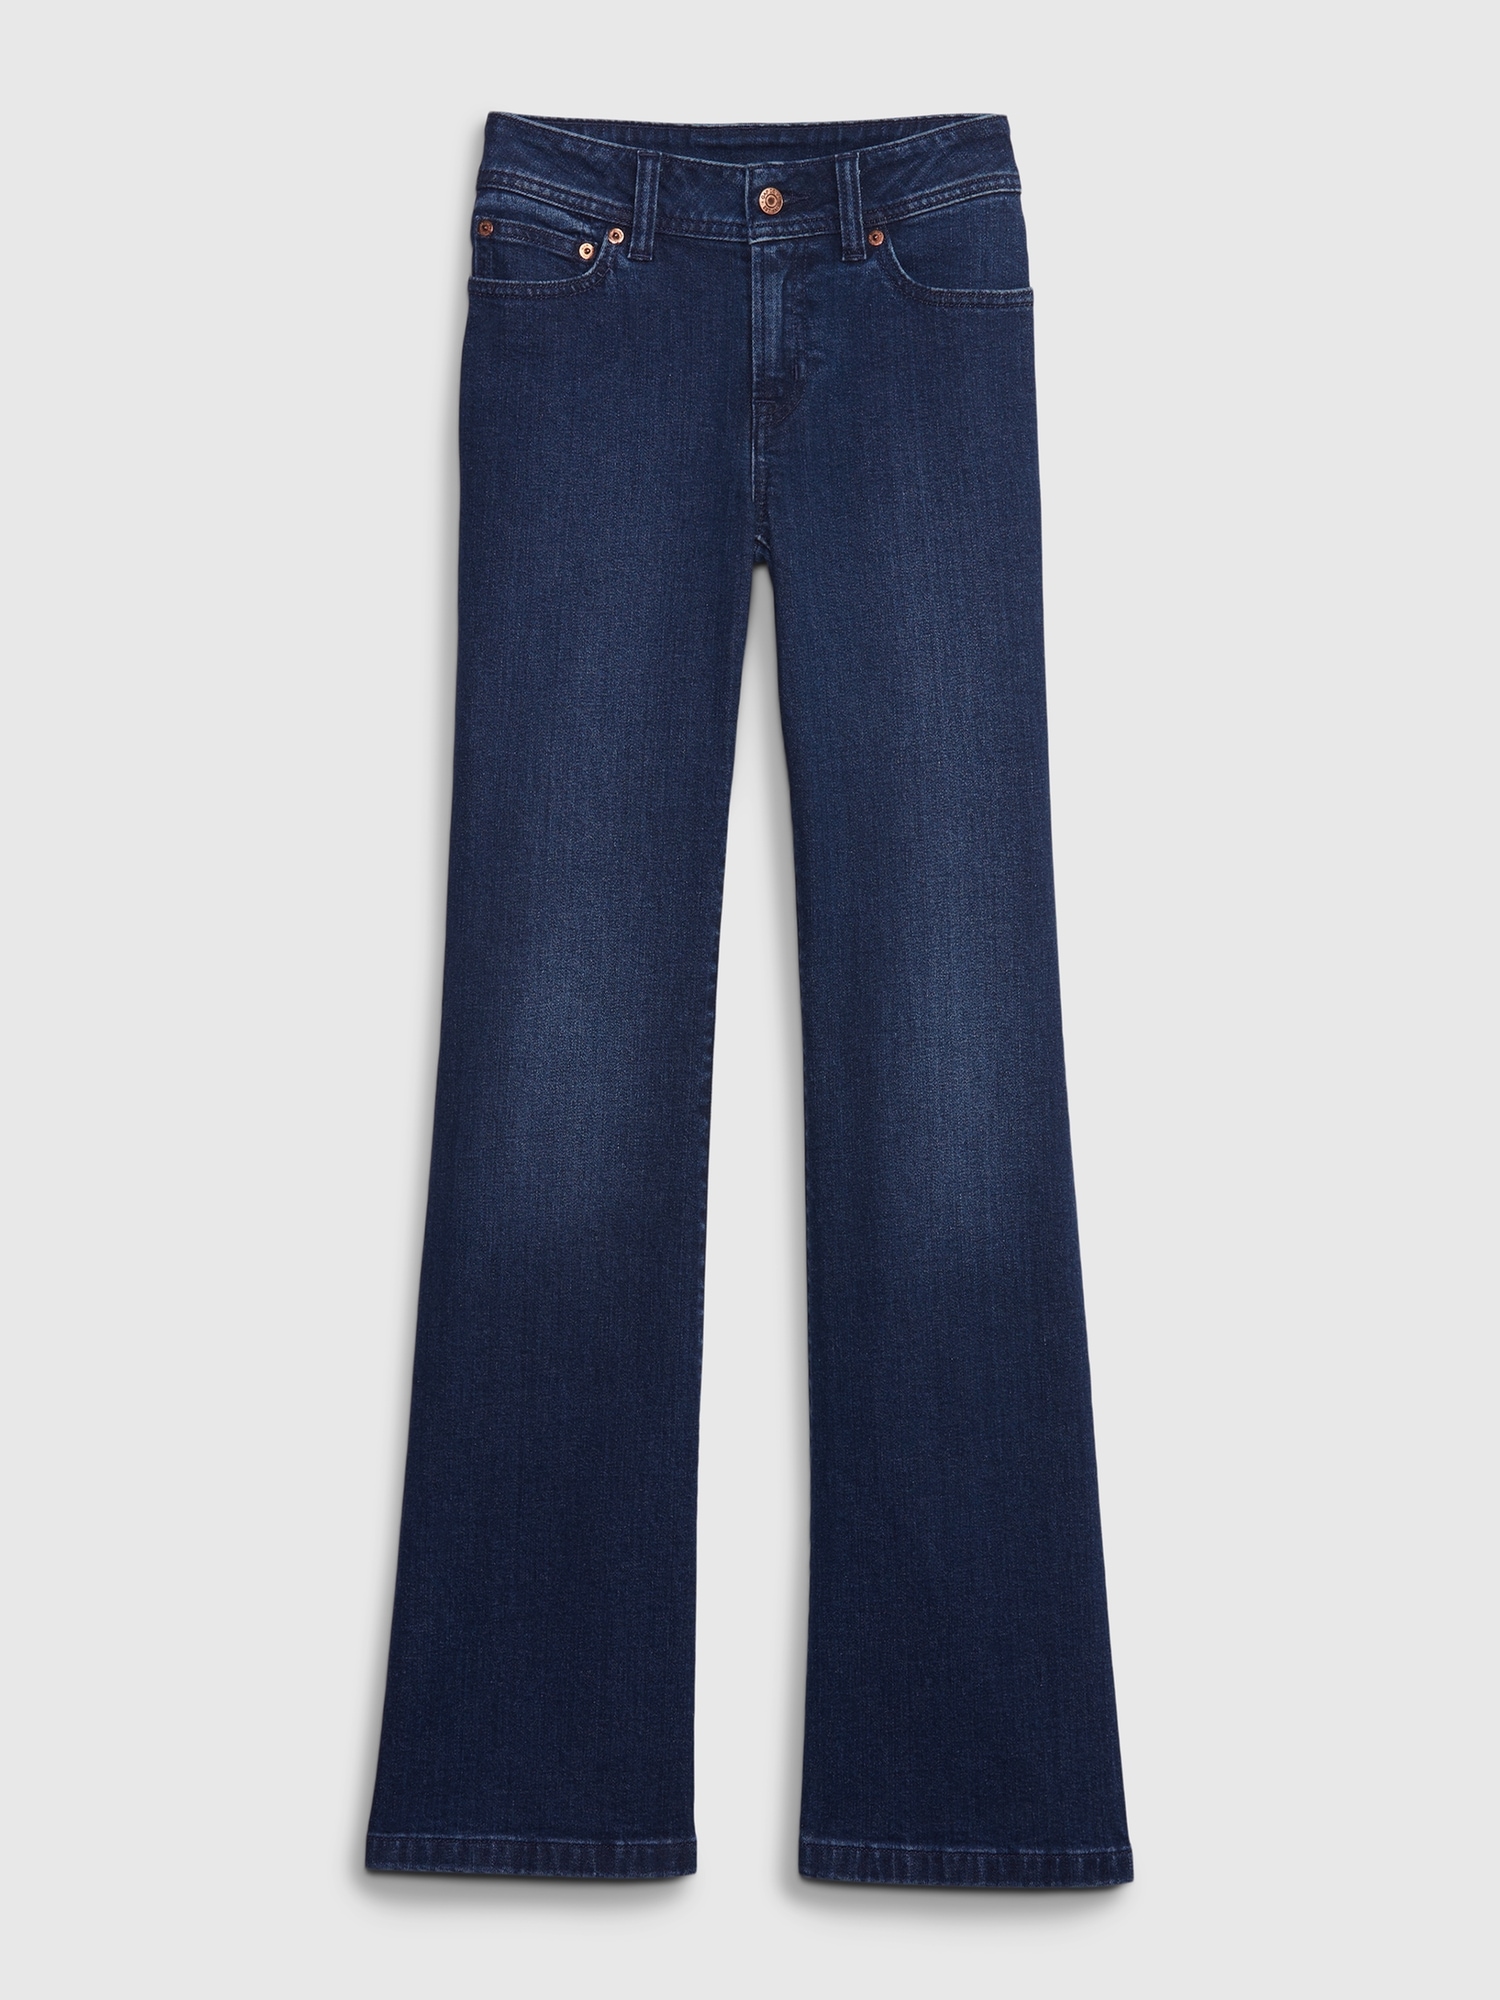 vintage 70s super low super flare distressed denim jeans / vintage